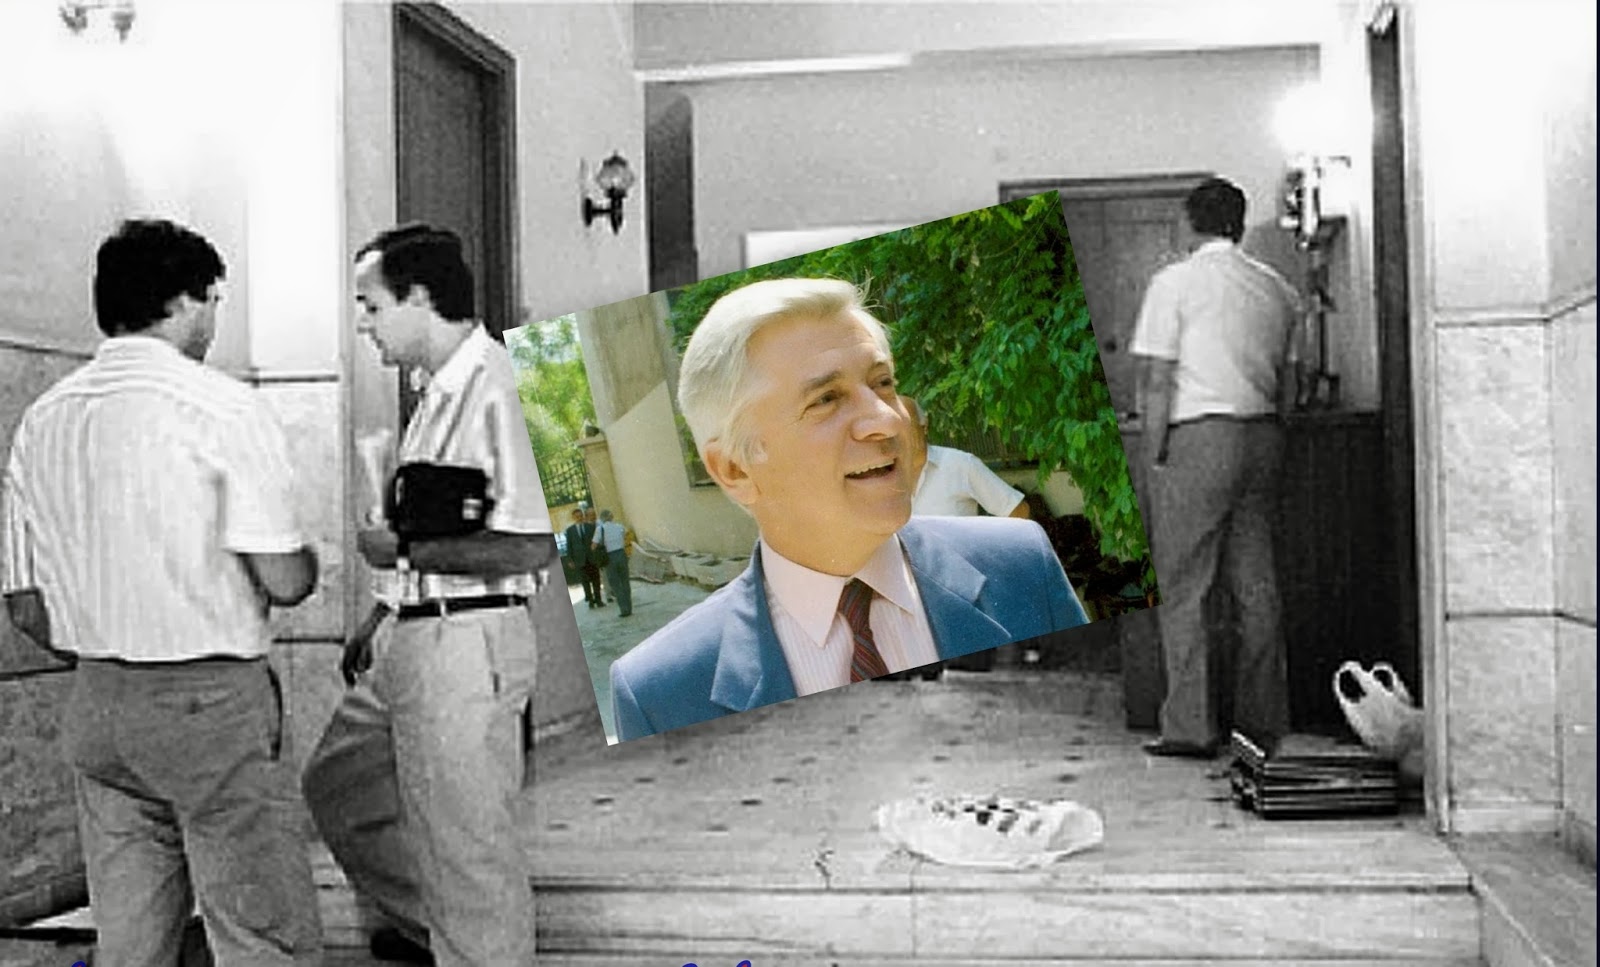 Σαν σήμερα πριν από 28 χρόνια: Ο Παύλος Μπακογιάννης δολοφονείται στην είσοδο του γραφείου του από τη 17Ν [photos - video] - Φωτογραφία 1